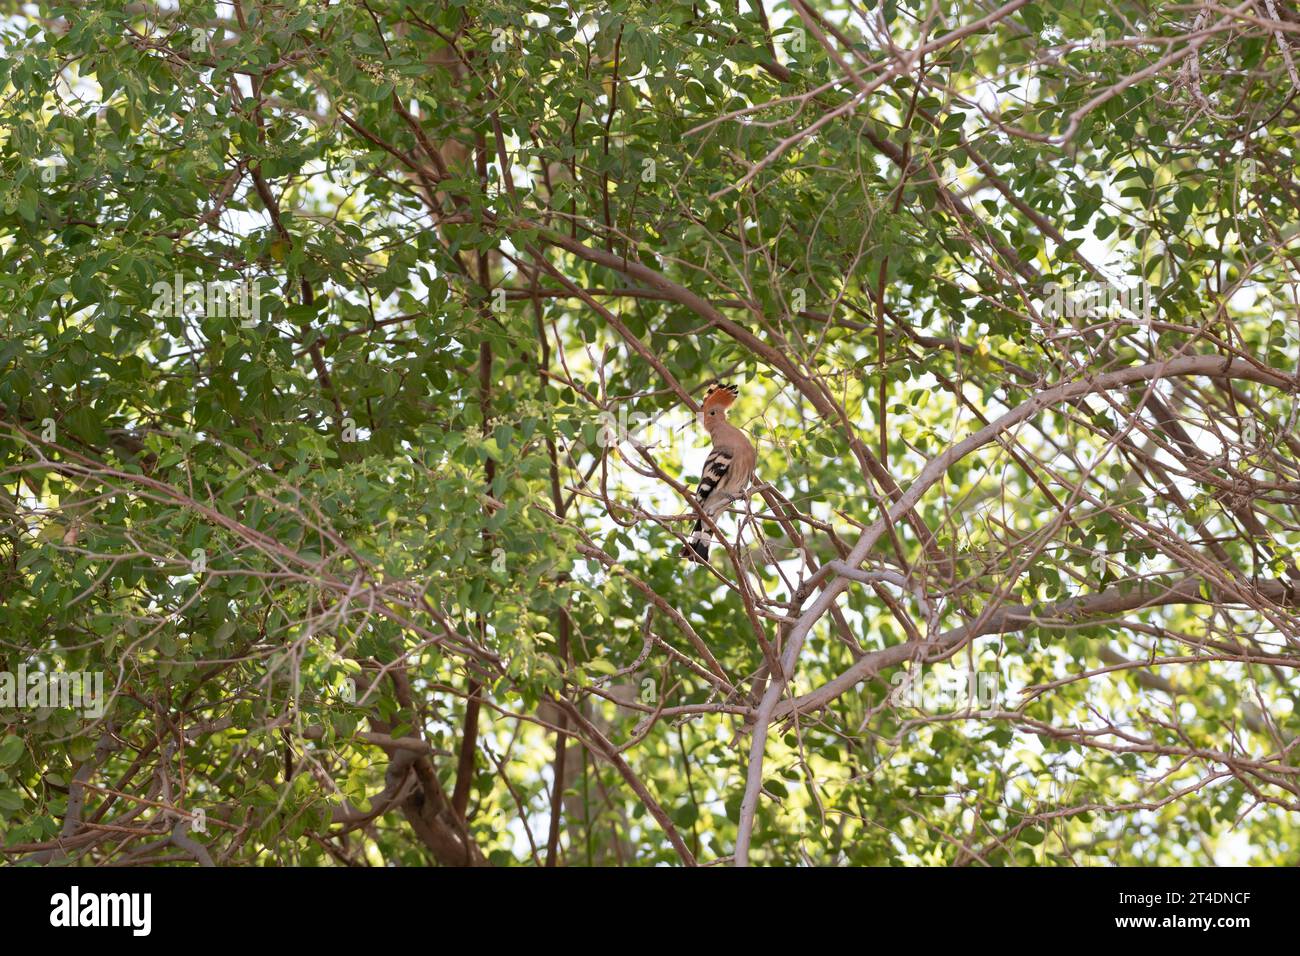 Hoopoe arroccato su un albero, fauna selvatica urbana a Dubai, Emirati Arabi Uniti (UAE), Medio Oriente Foto Stock